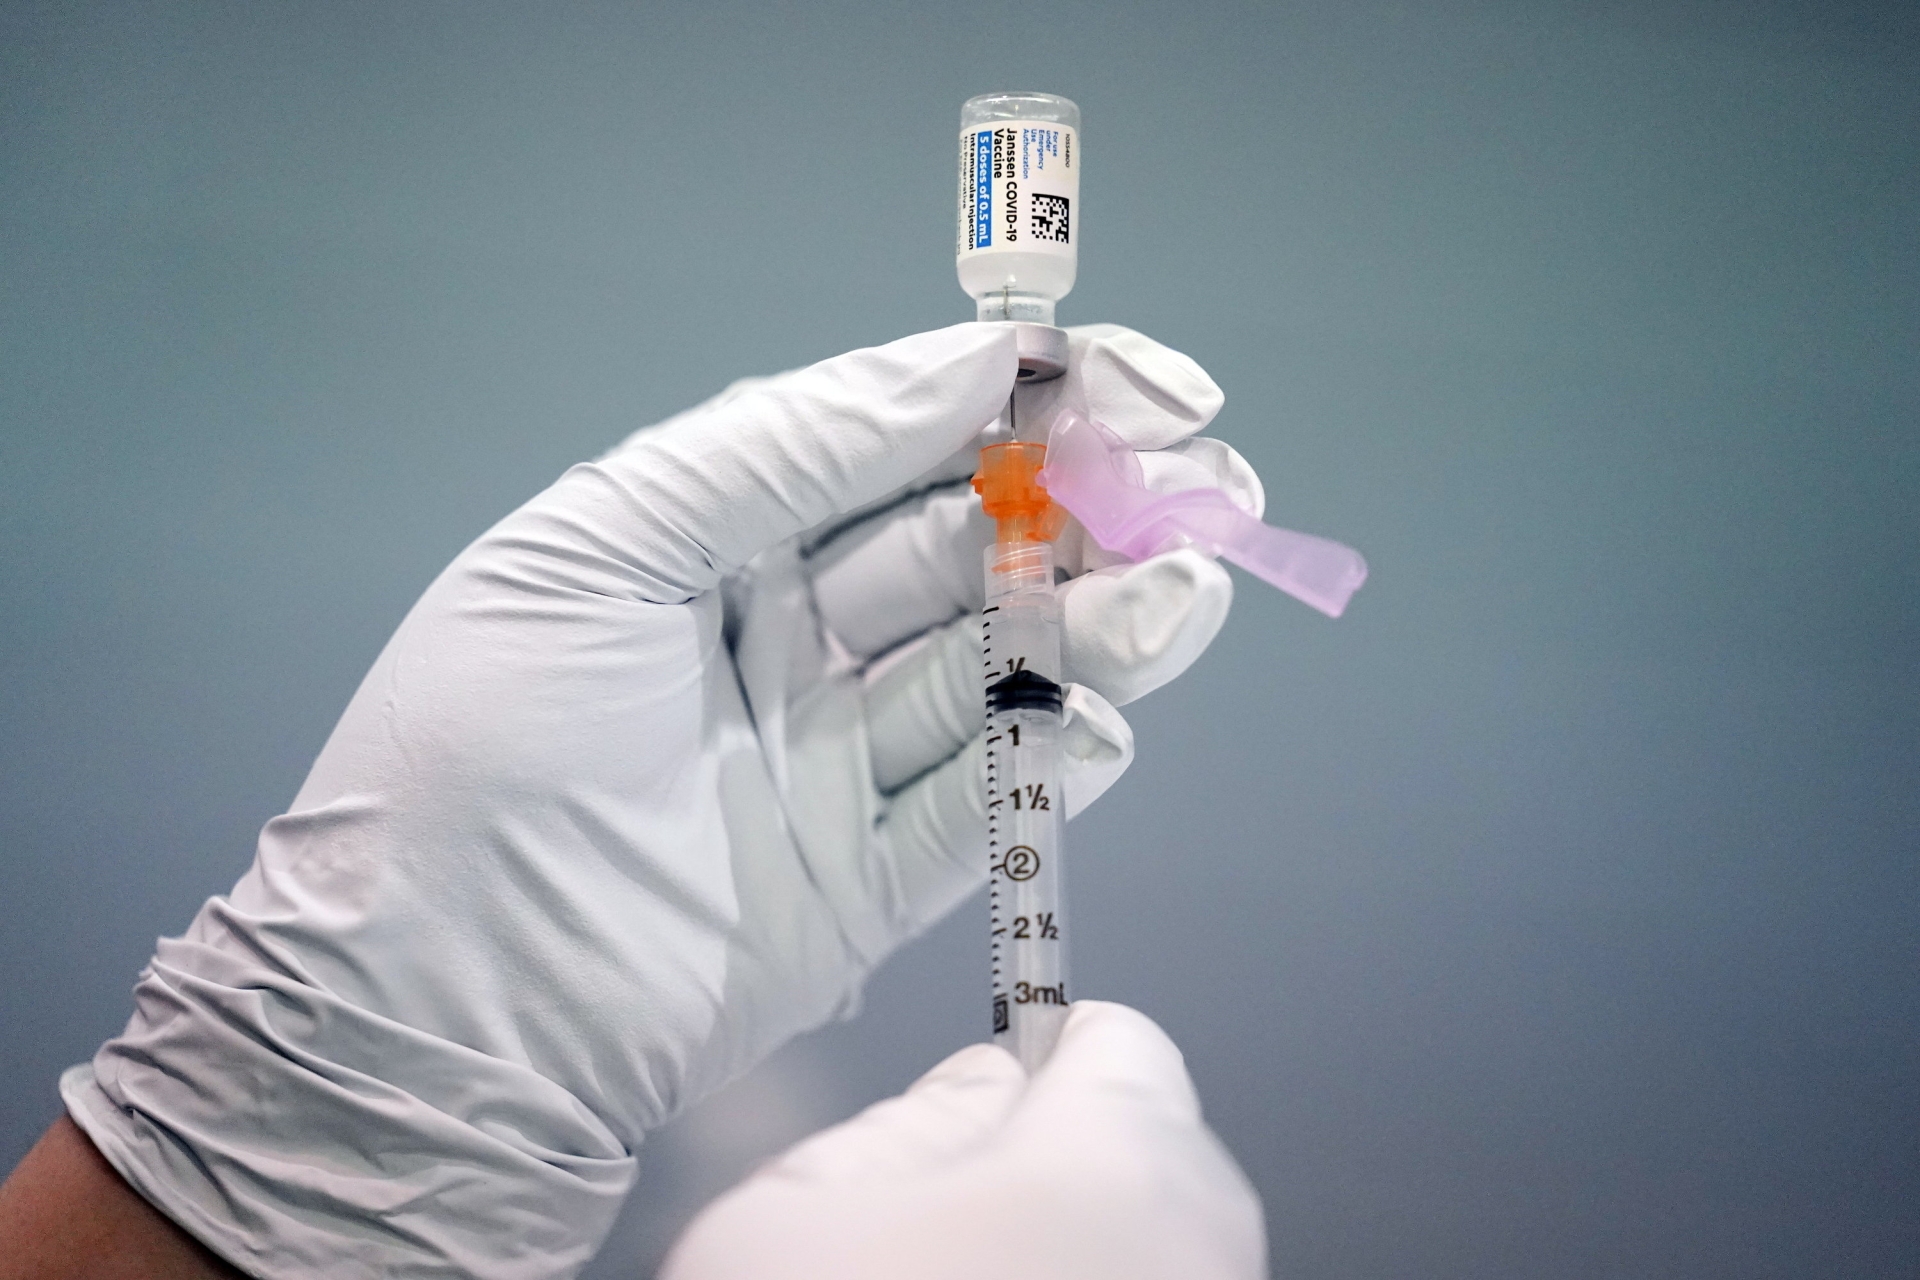 Dans le canton de Berne, environ 300 doses de ce nouveau vaccin pourront être administrées chaque jour à des personnes de 18 ans et plus.